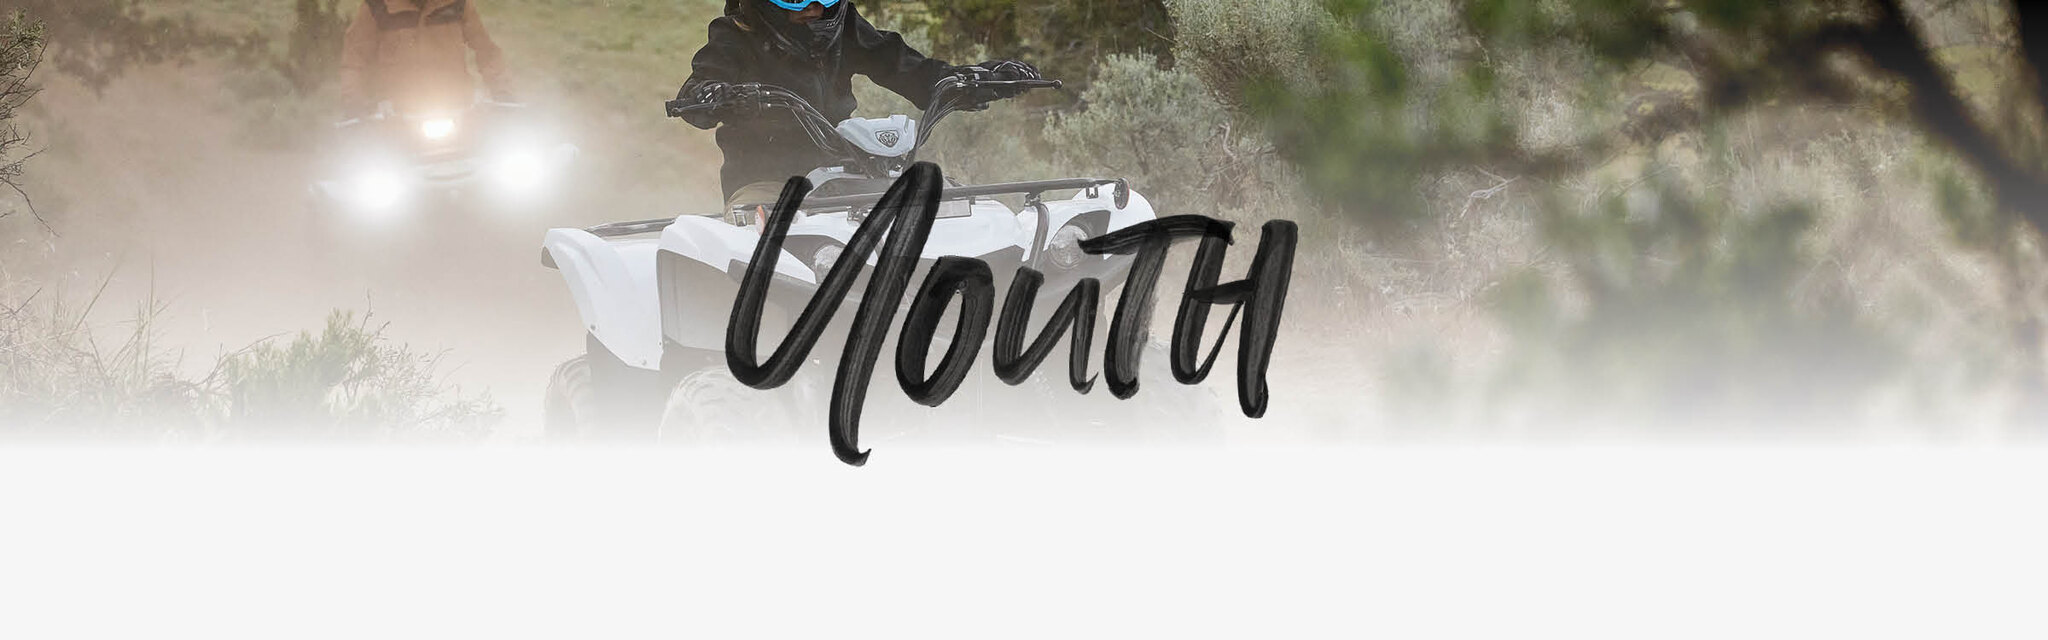 ATV Beginner & Youth